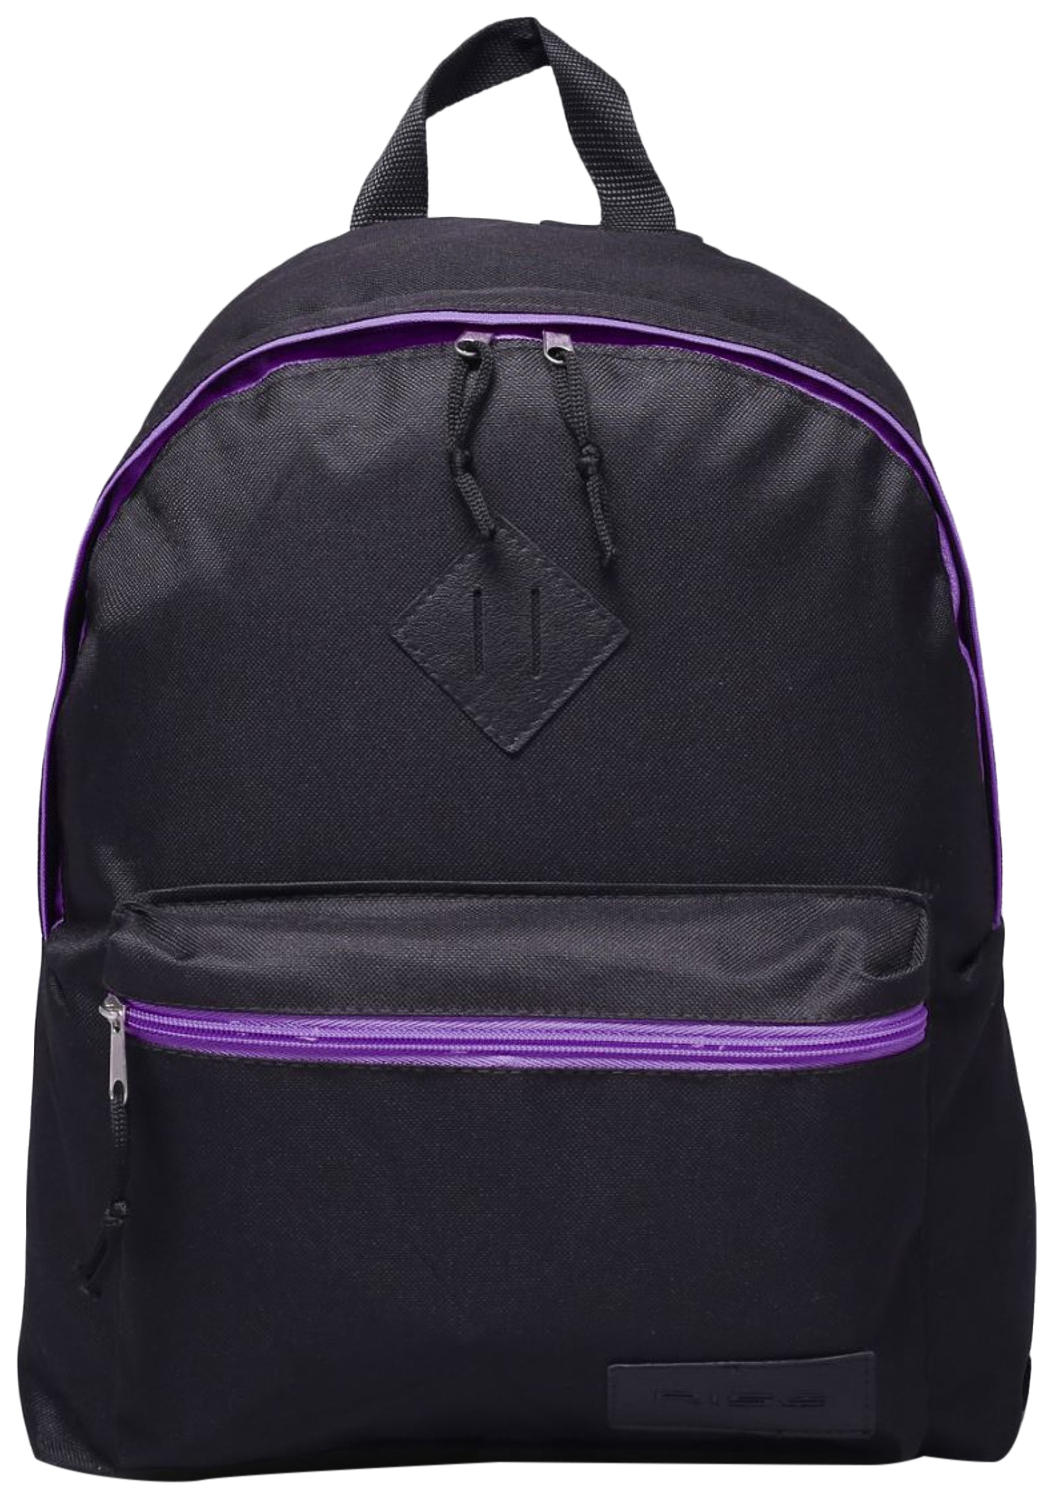 Рюкзак детский RISE Классический, черно-фиолетовый